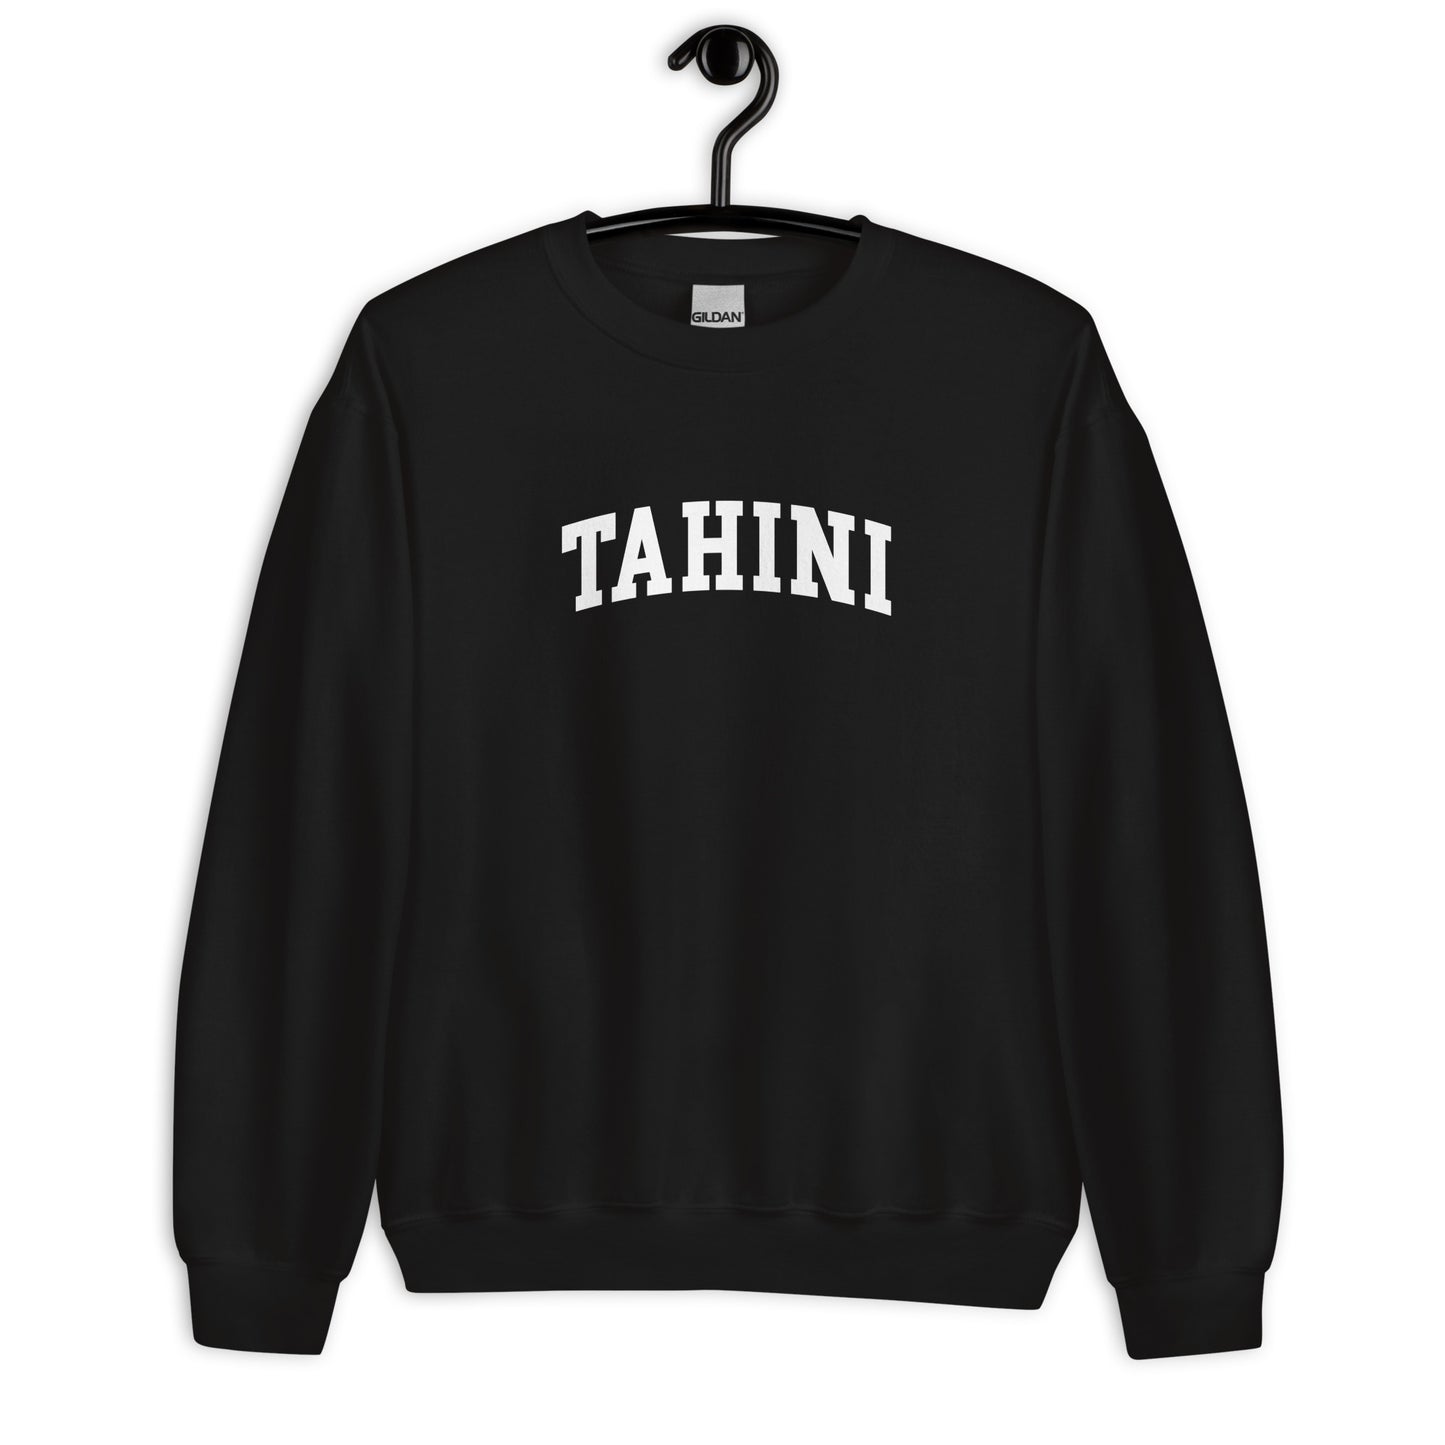 Tahini Sweatshirt - Arched Font